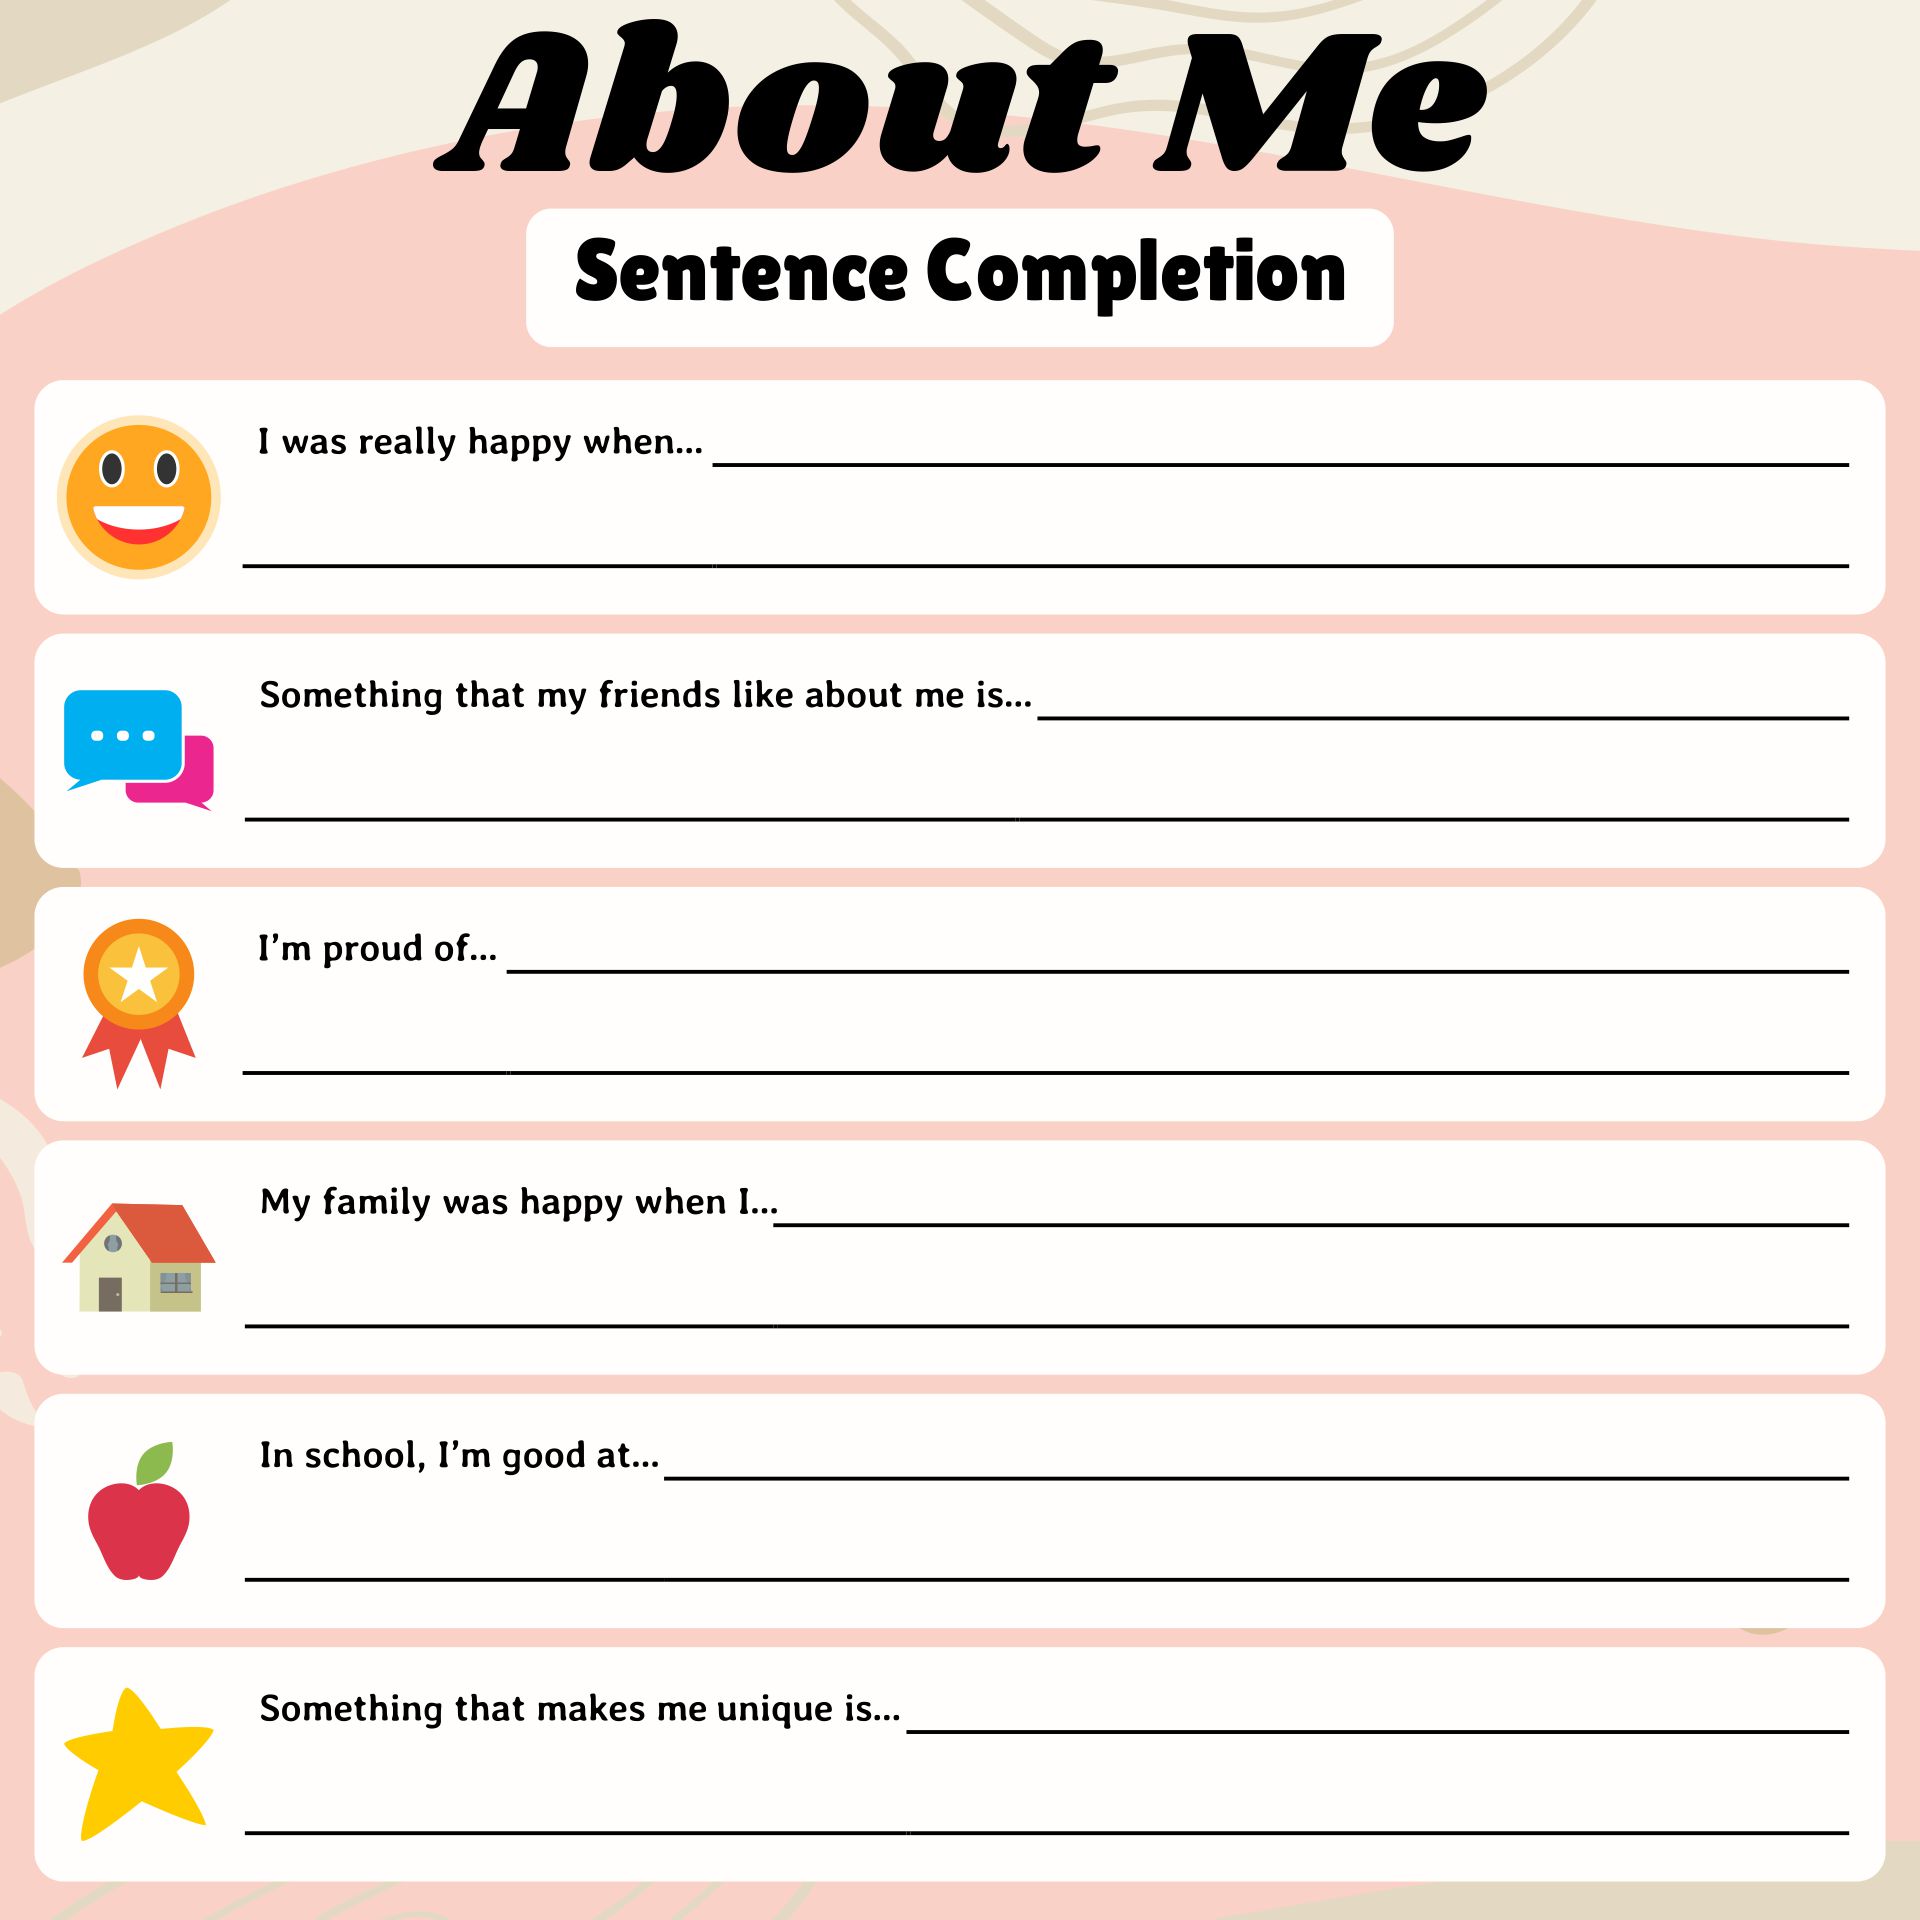 About Me Self-Esteem Sentence Completion Worksheet Printable